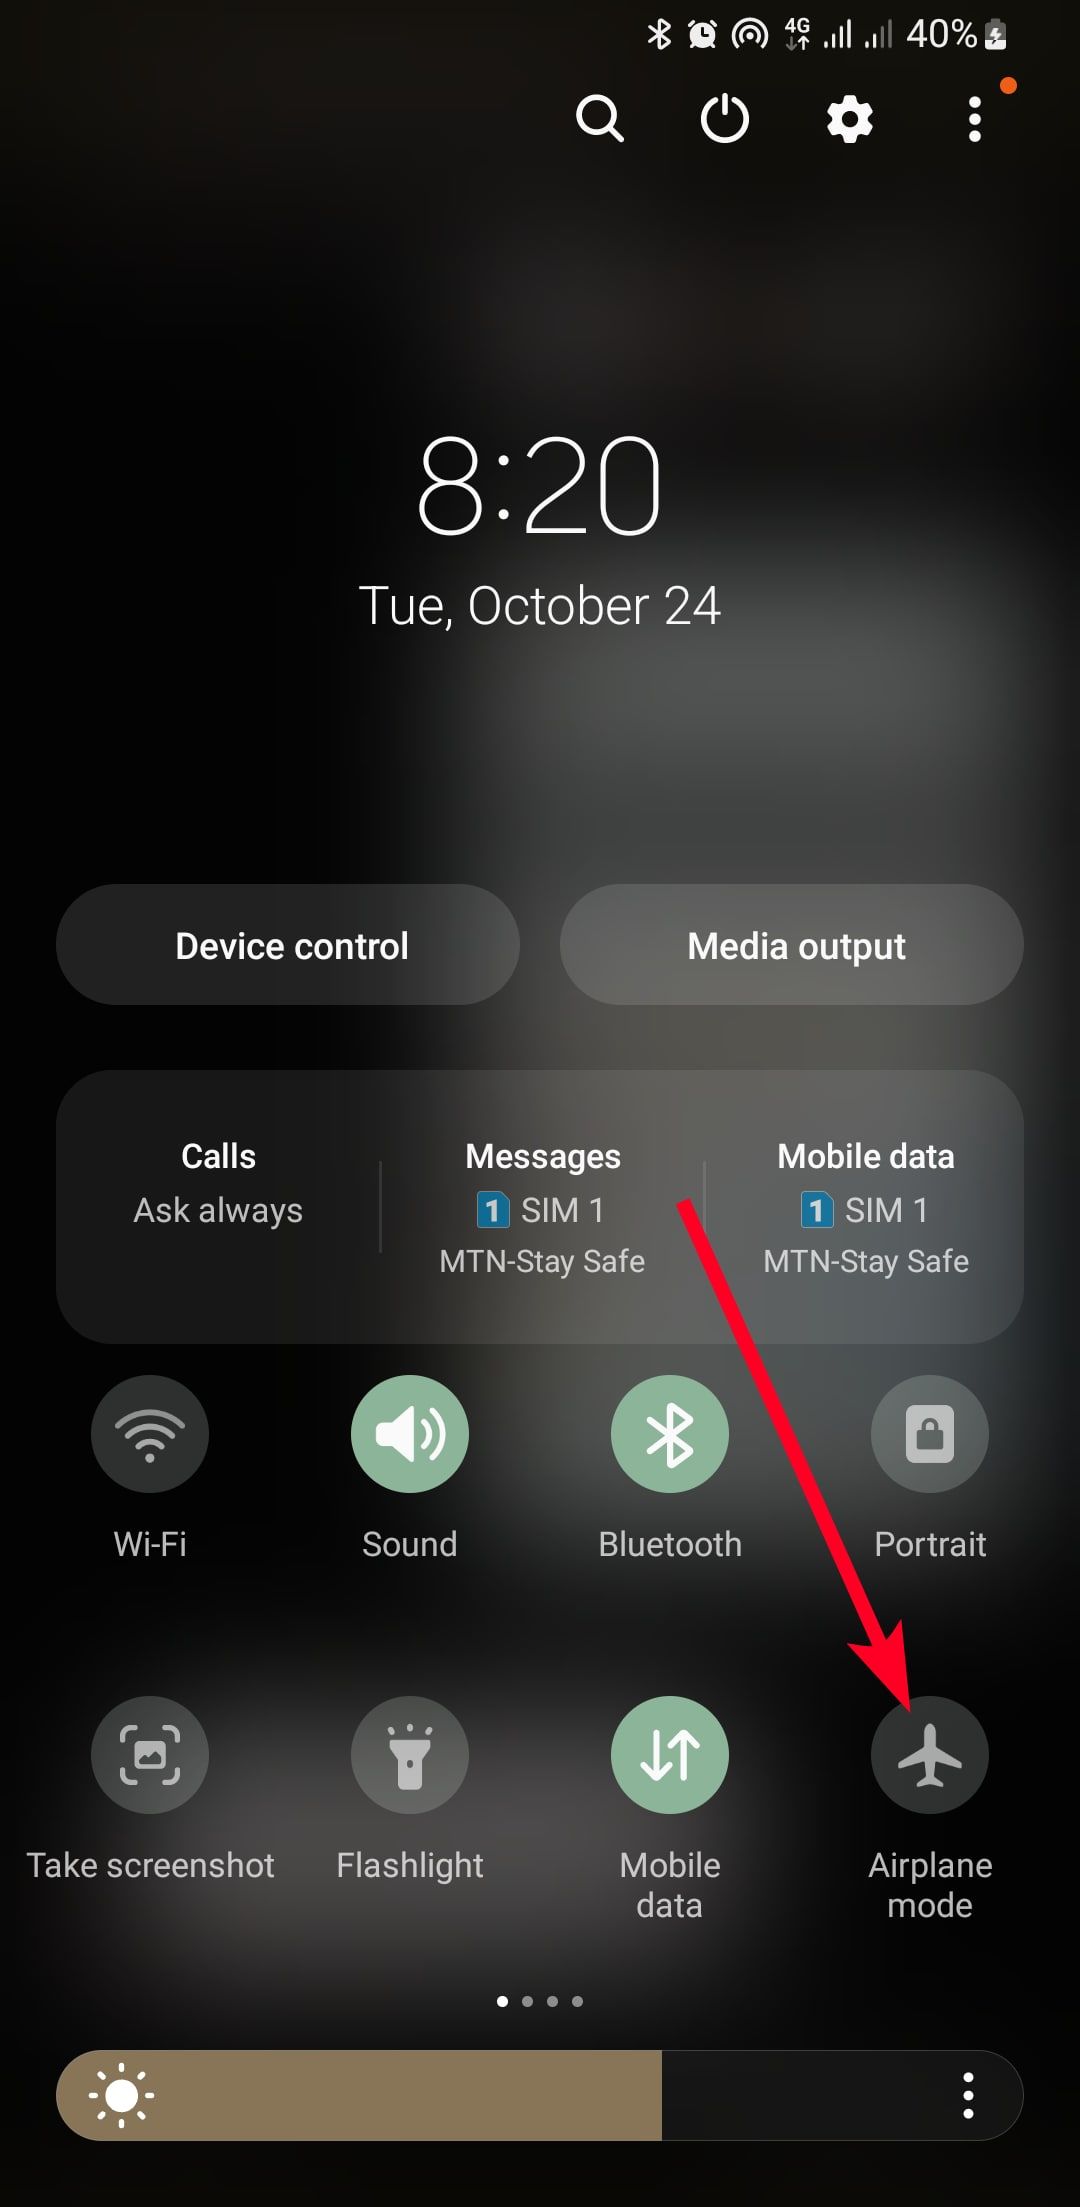 seta sólida vermelha apontando para o botão Modo avião no painel de notificação do Android